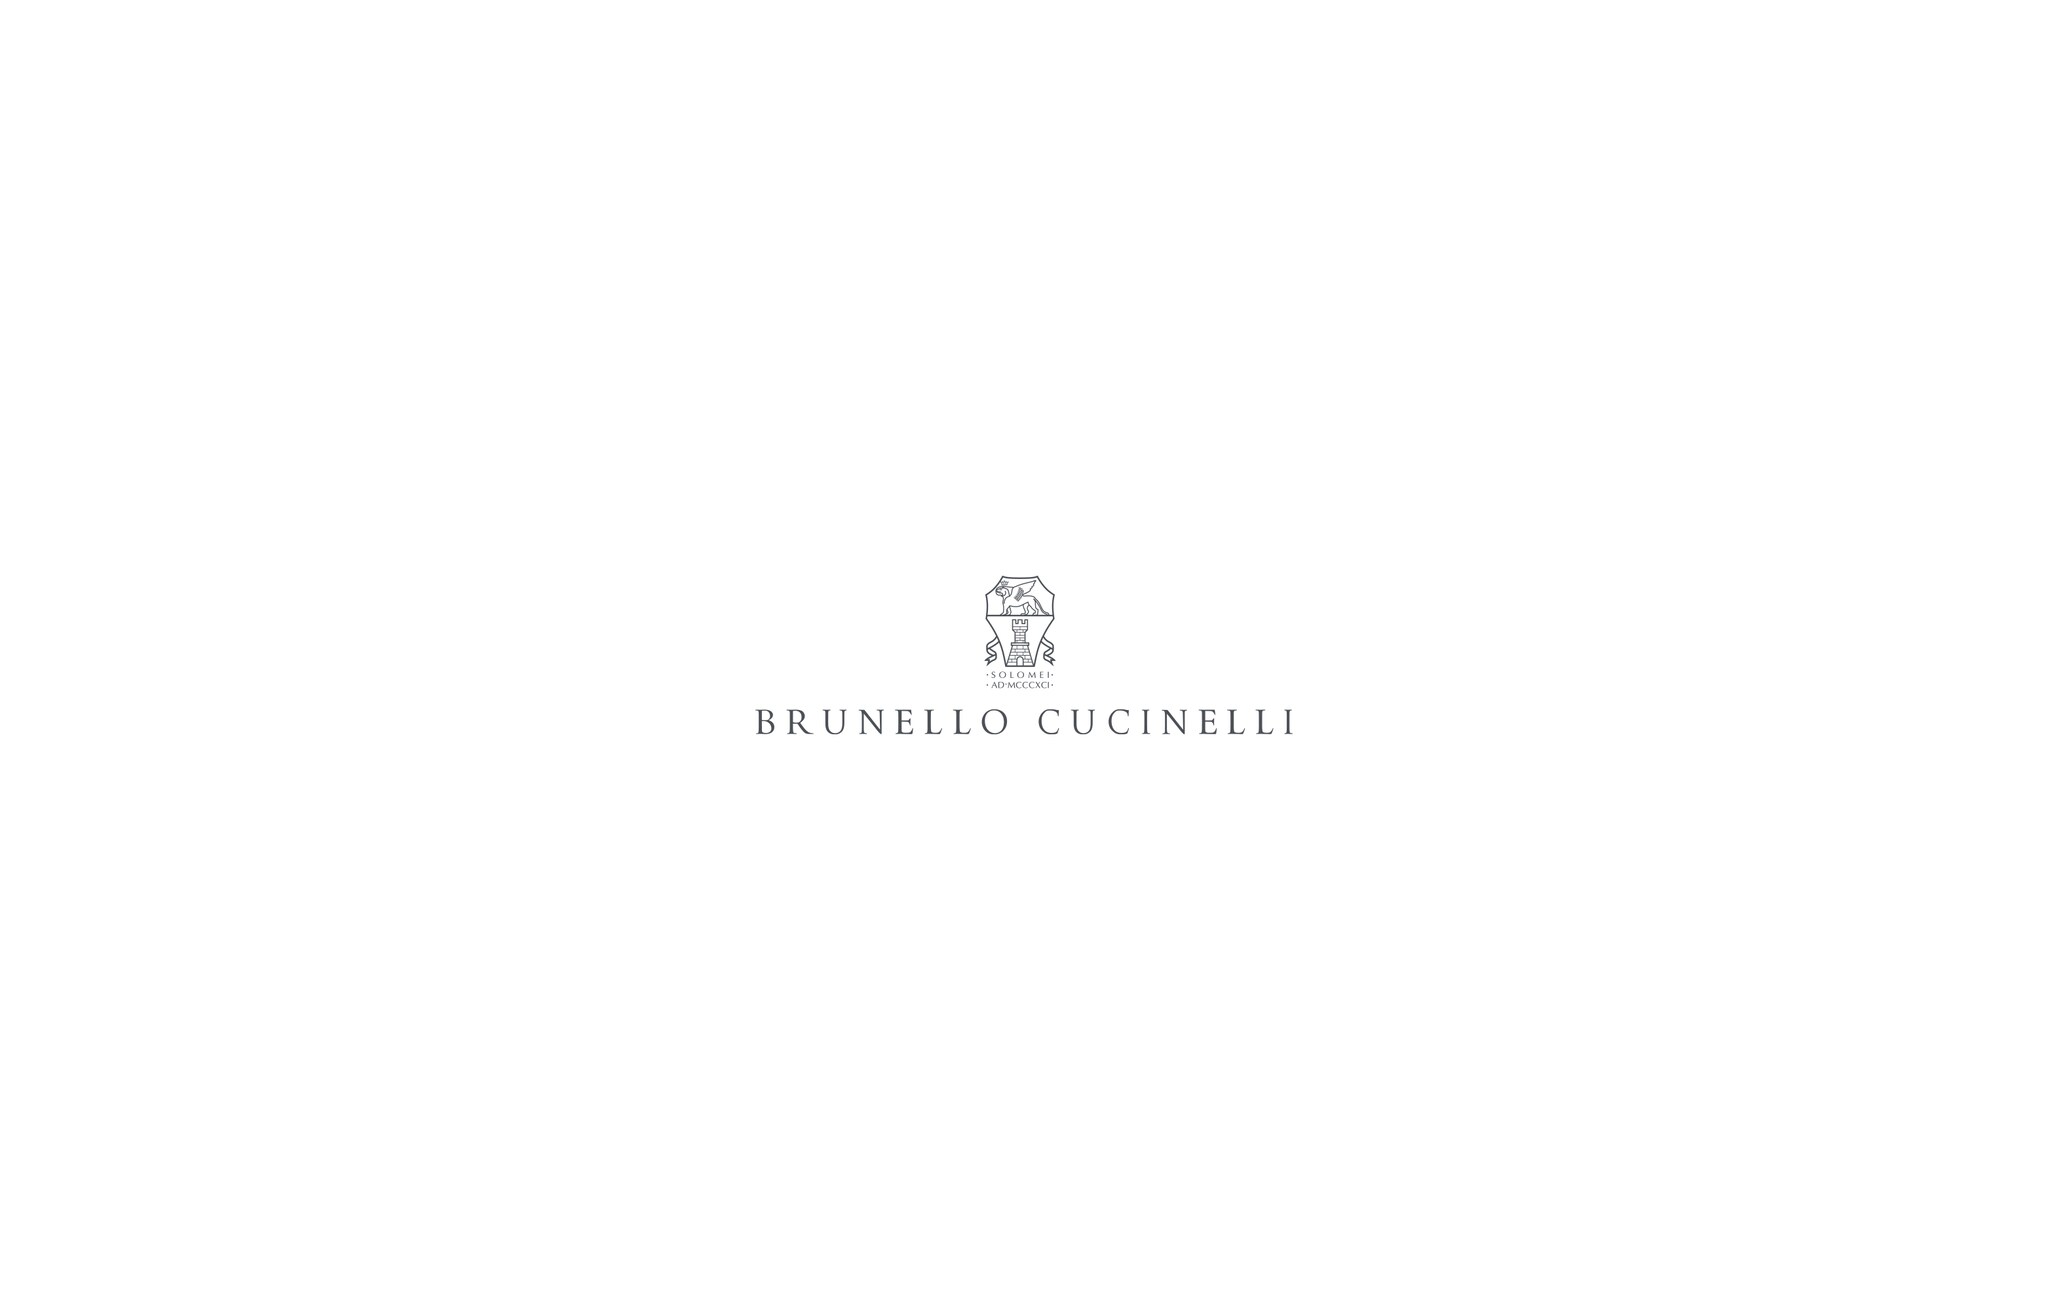  小水牛皮质双肩包 桃花心木 男款 - Brunello Cucinelli 